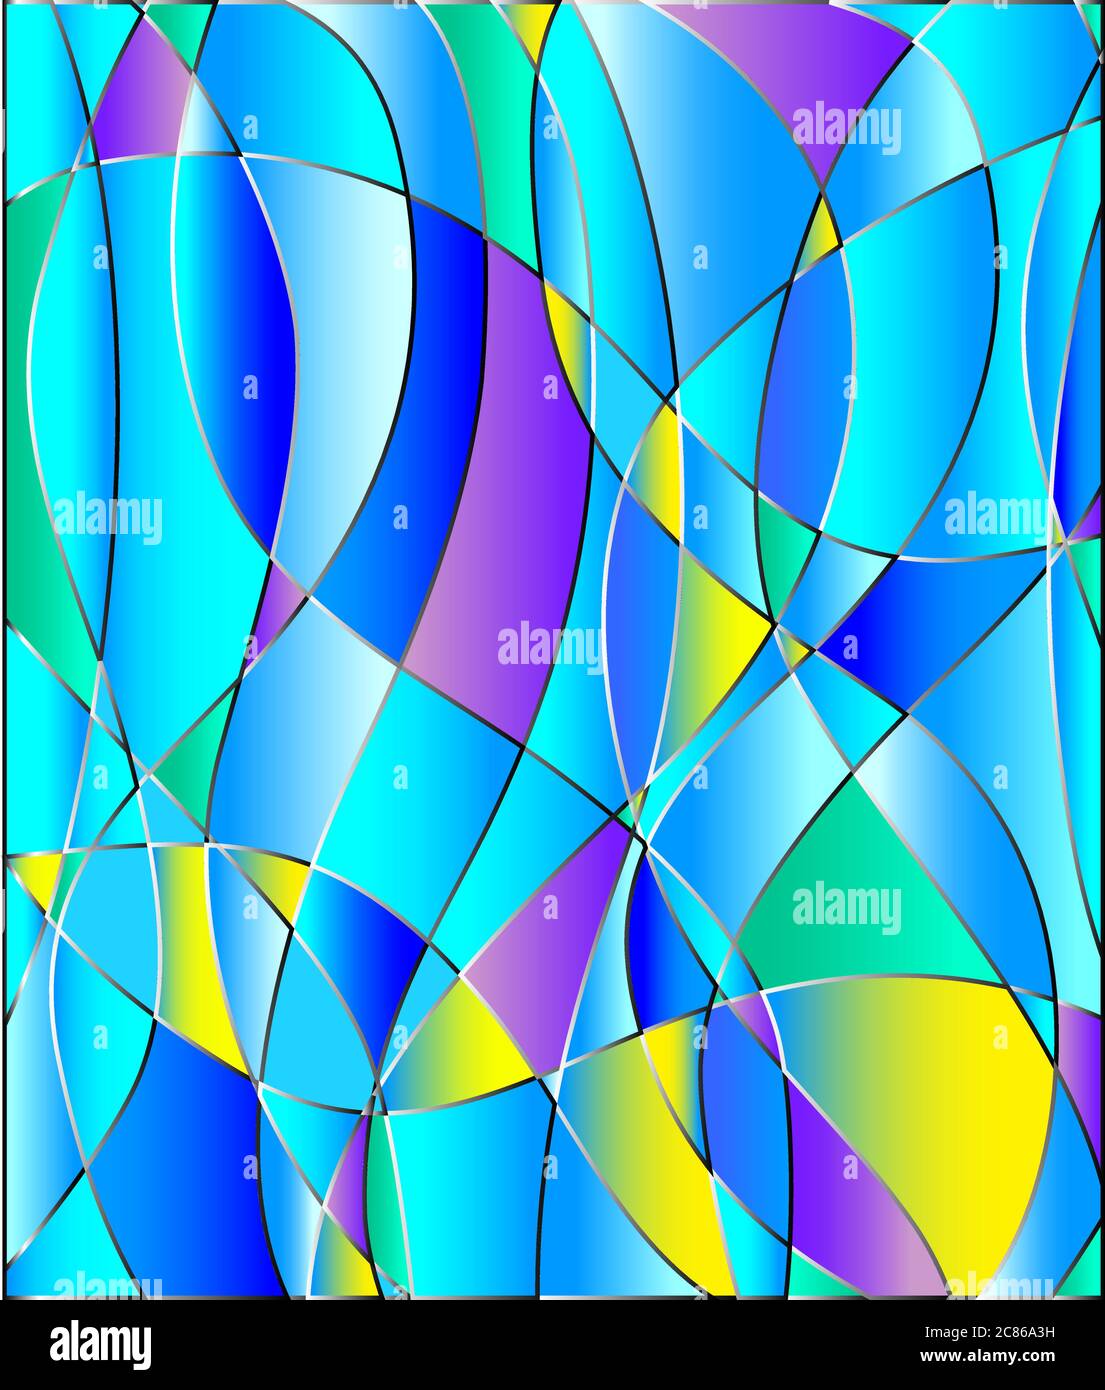 illustration de fond abstraite, avec texture vitrail, ton bleu Illustration de Vecteur